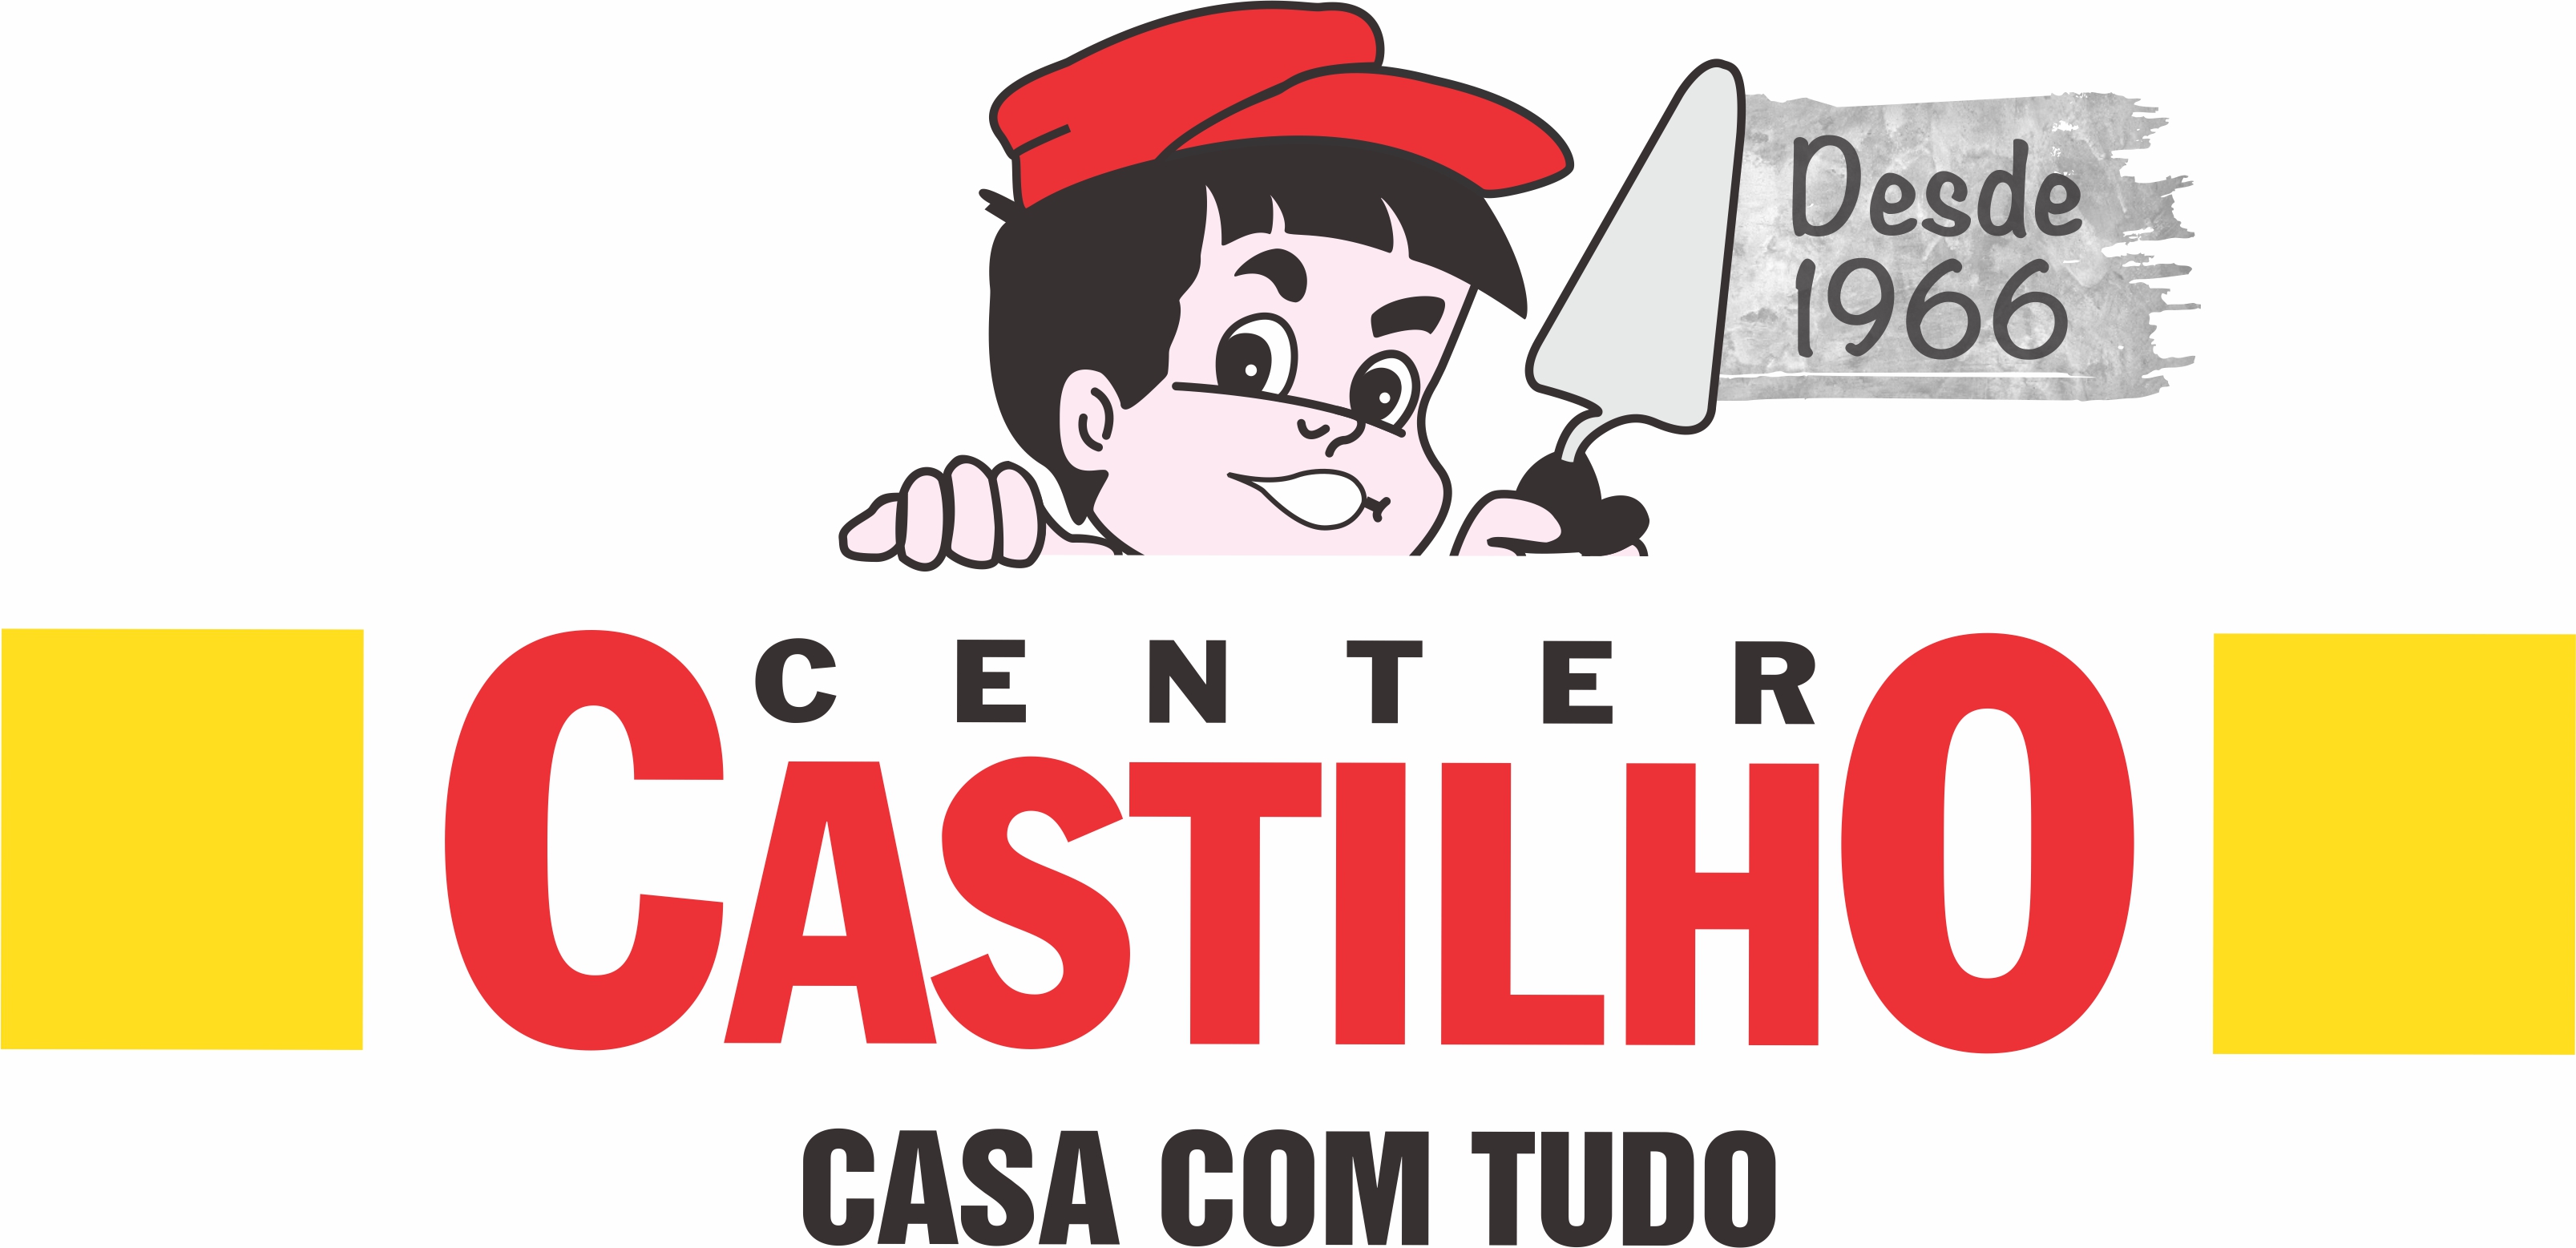 CENTER CASTILHO - Materiais de Construção - São Paulo, SP